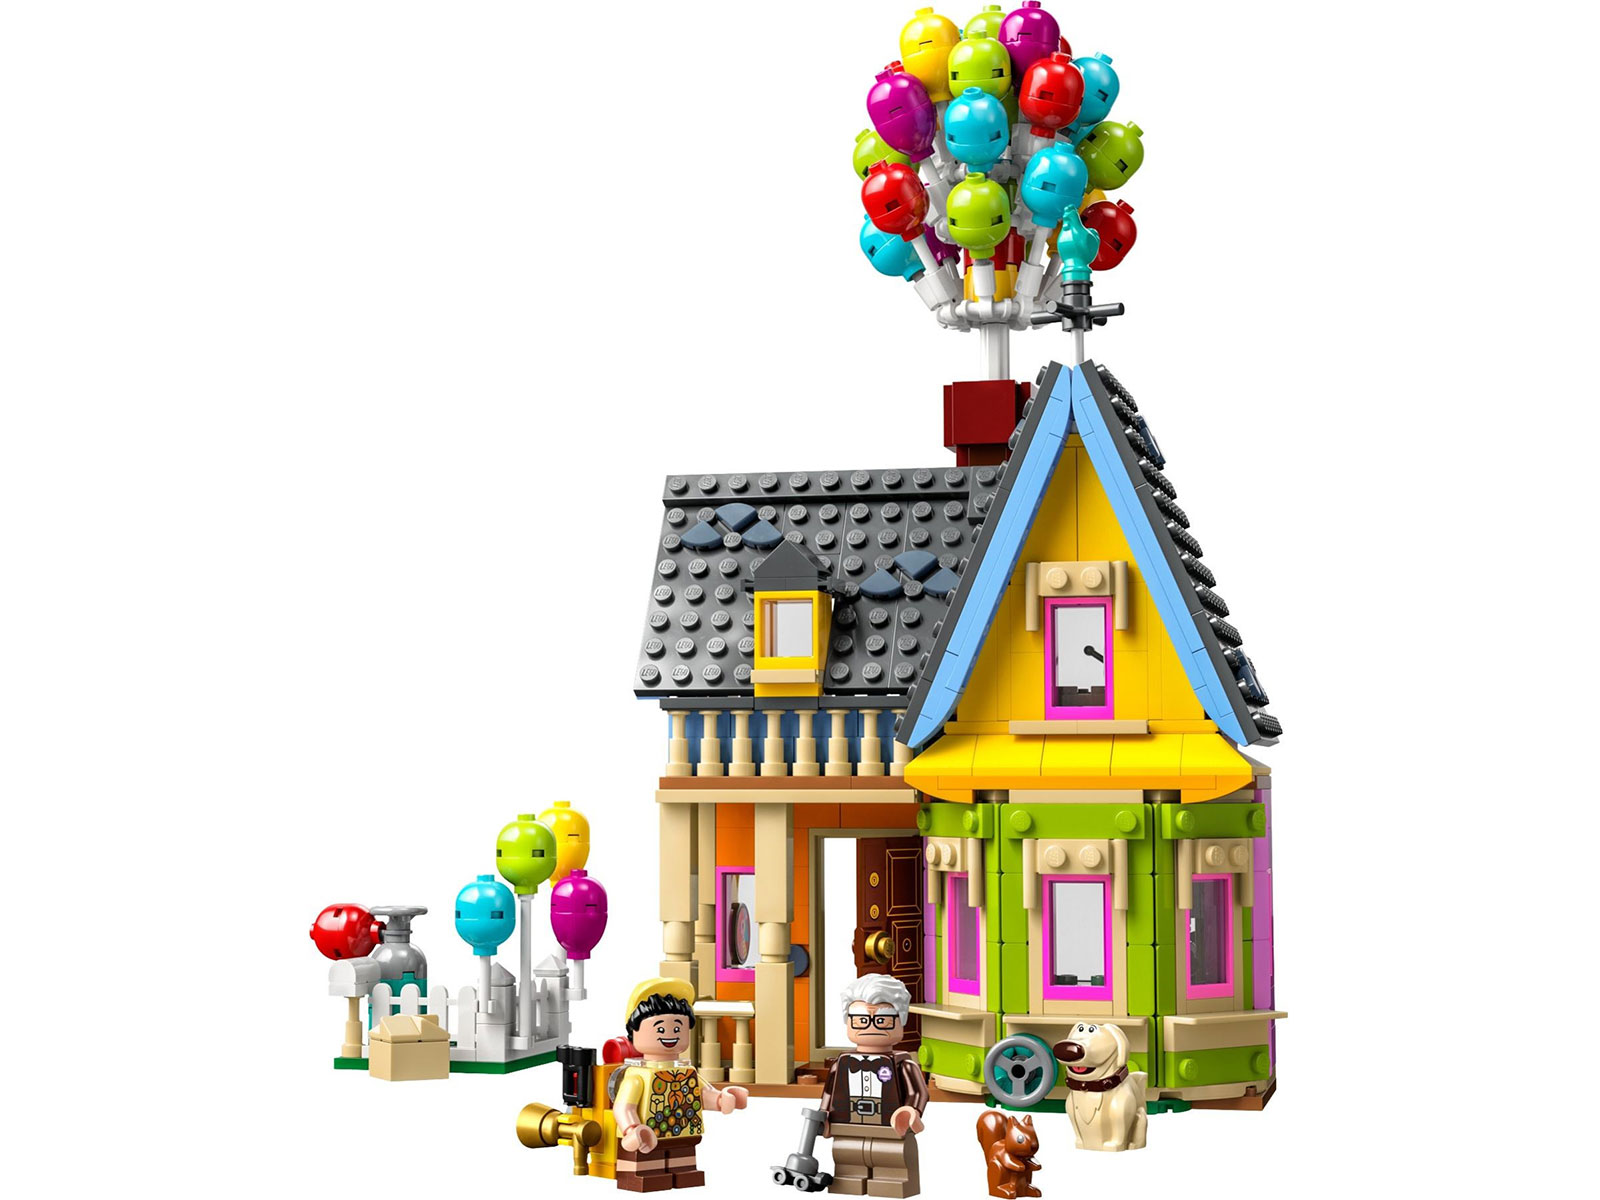 LEGO® Disney 43217 - Carls Haus aus „Oben“